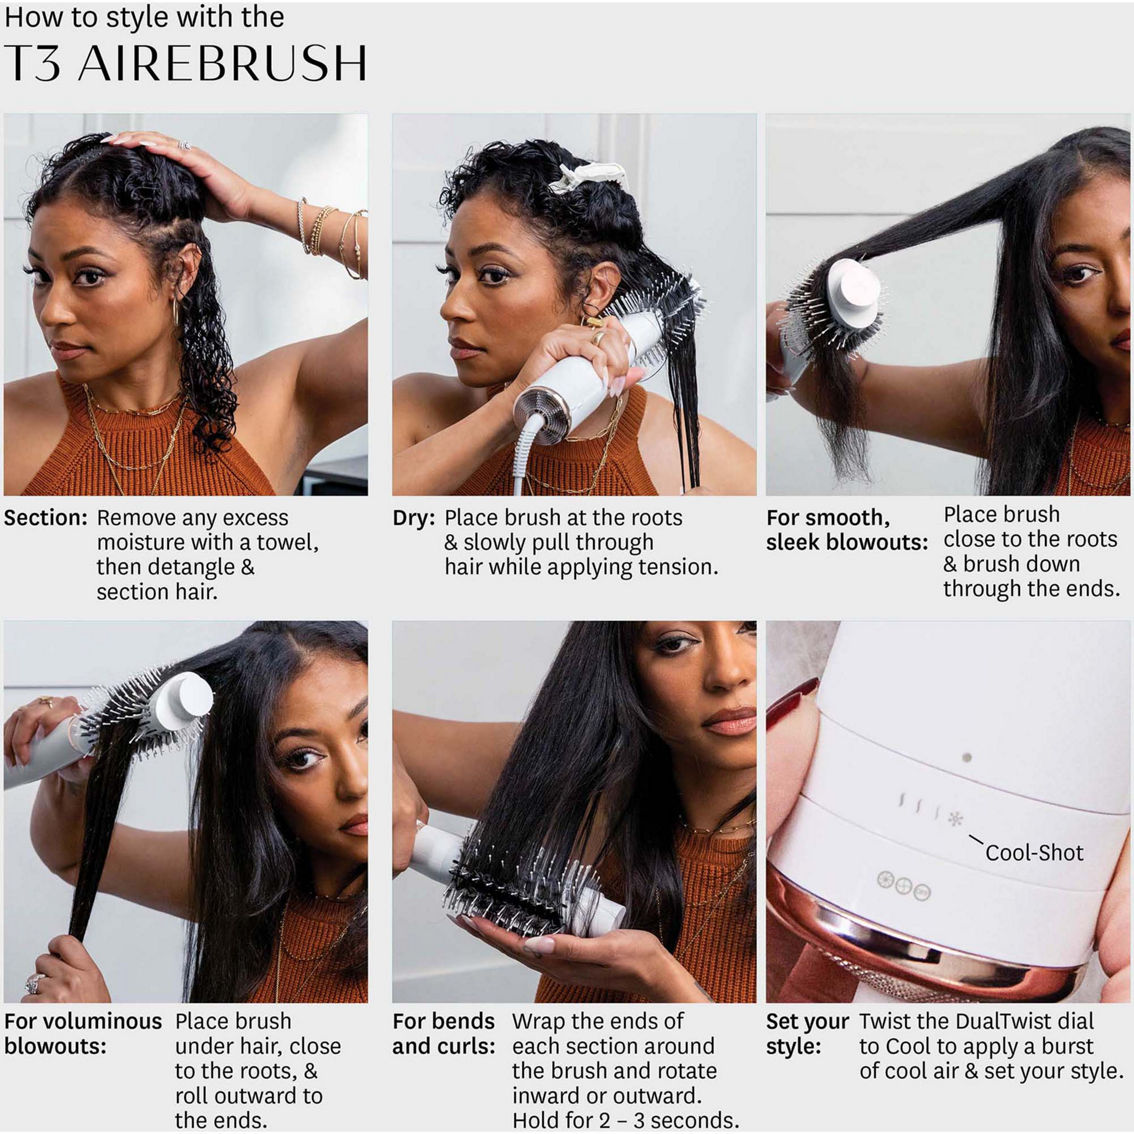 T3 AireBrush One Step Smoothing and Volumizing Hair Dryer Brush - Image 10 of 10